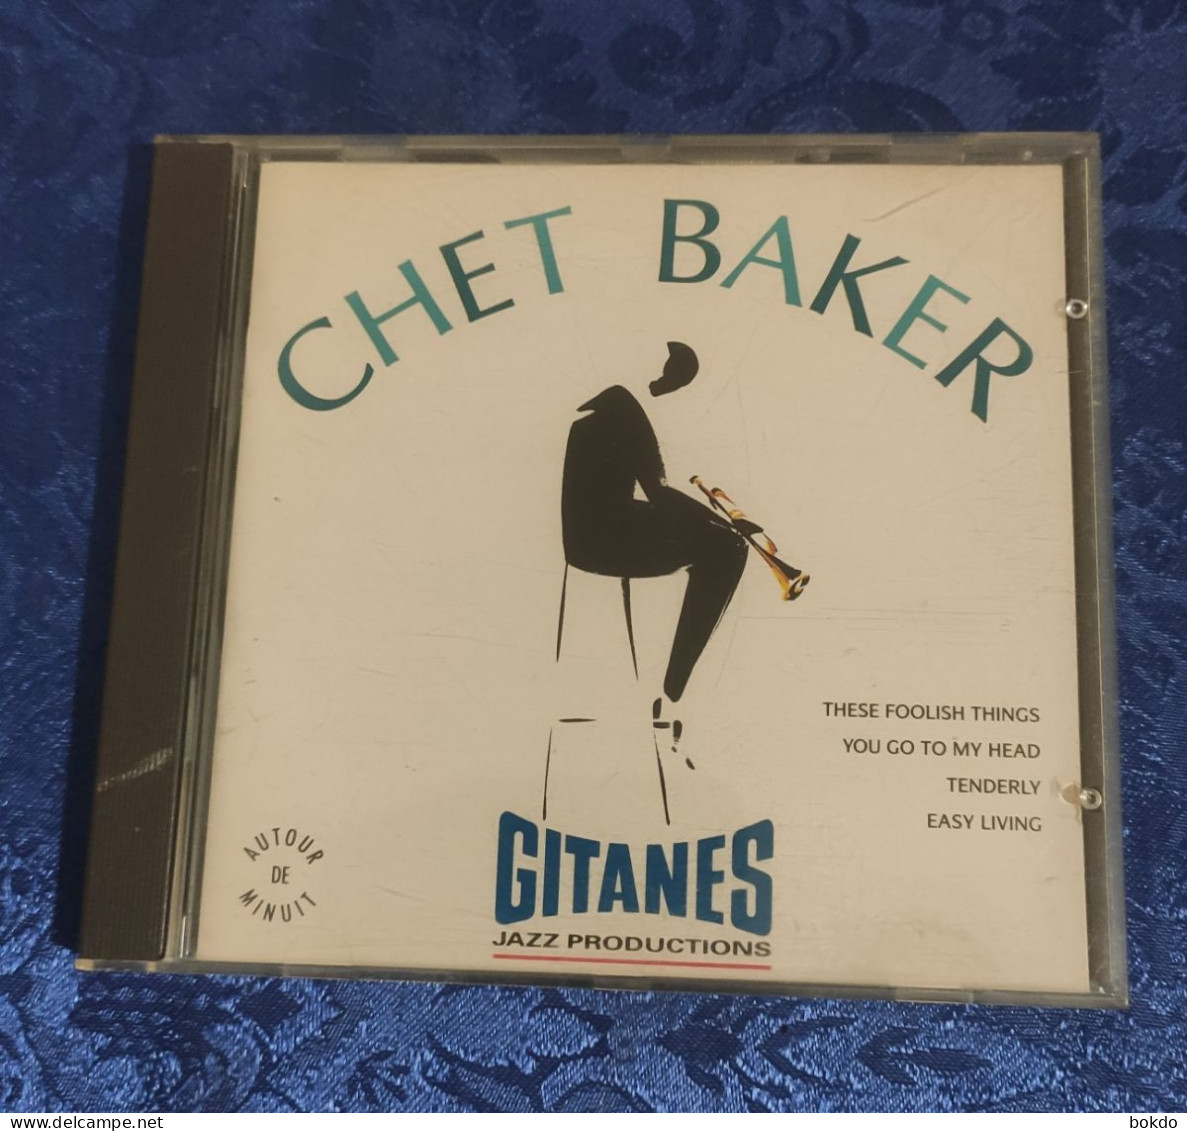 CHET BAKER - Gitanes - Jazz Productions - Sonstige - Englische Musik